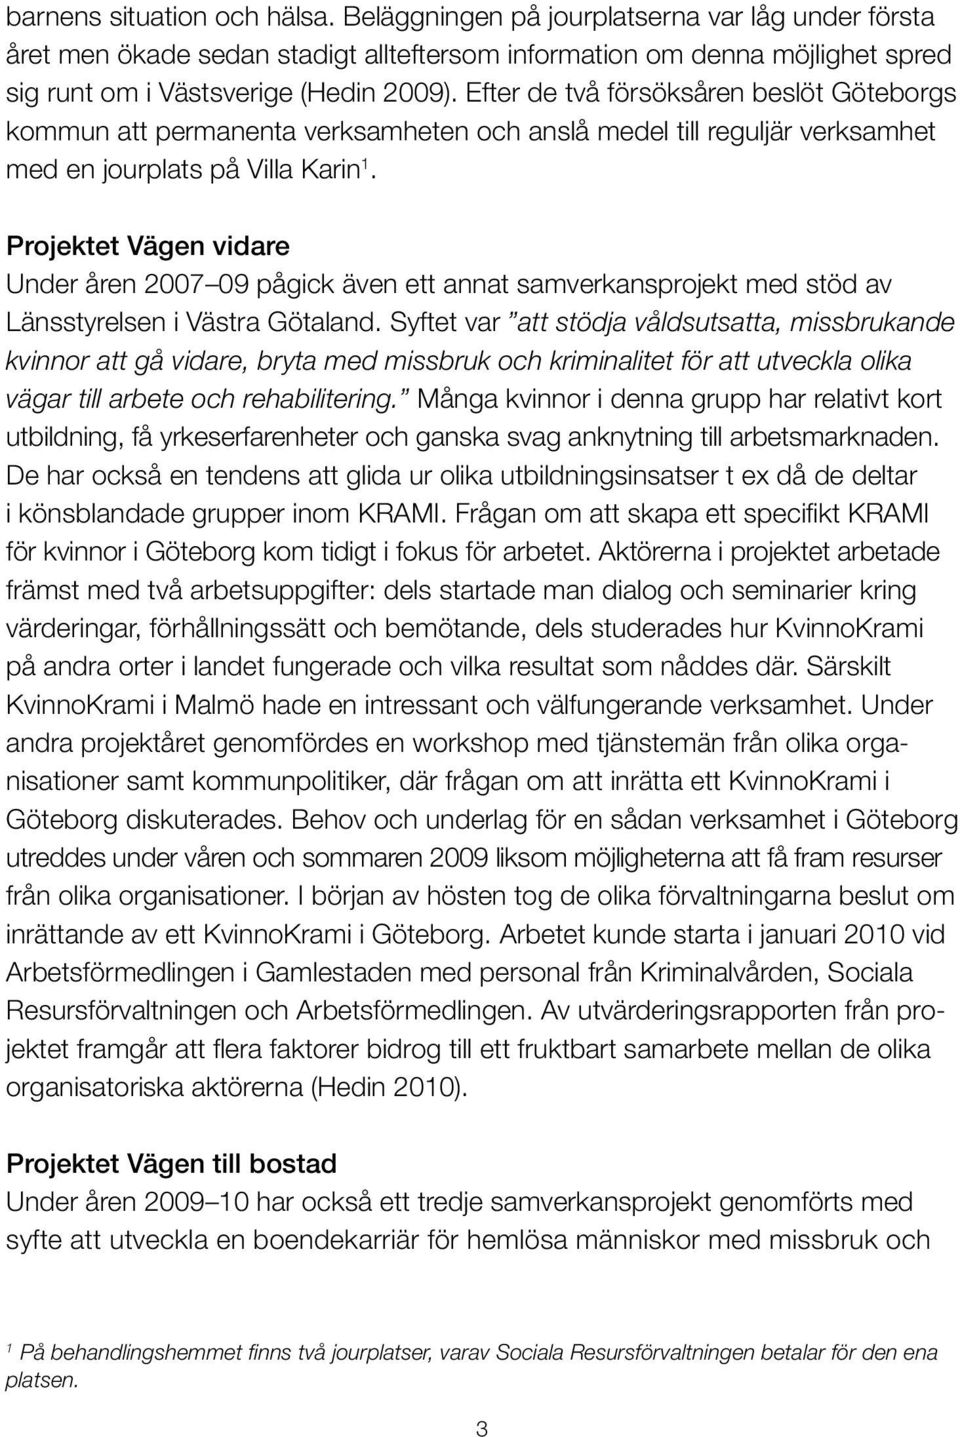 Projektet Vägen vidare Under åren 2007 09 pågick även ett annat samverkansprojekt med stöd av Länsstyrelsen i Västra Götaland.